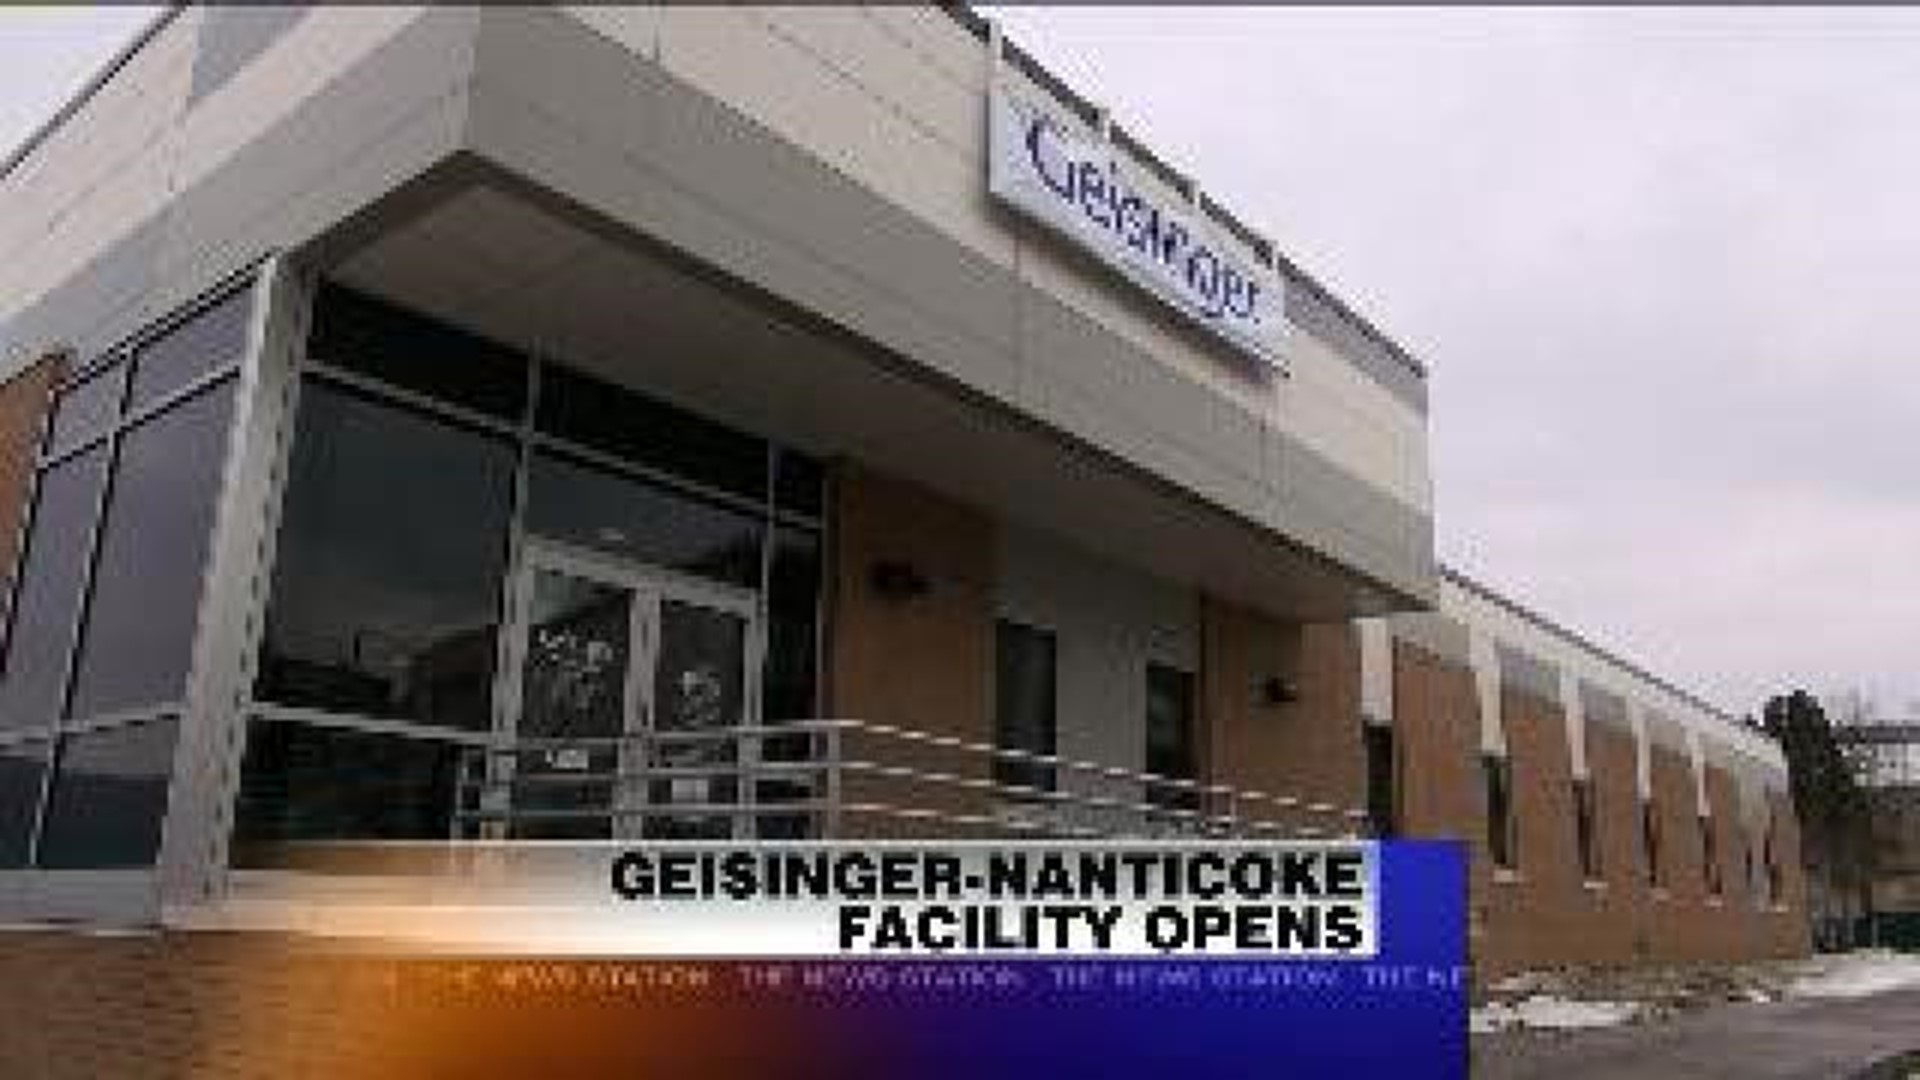 Geisinger-Nanticoke Facility Opens